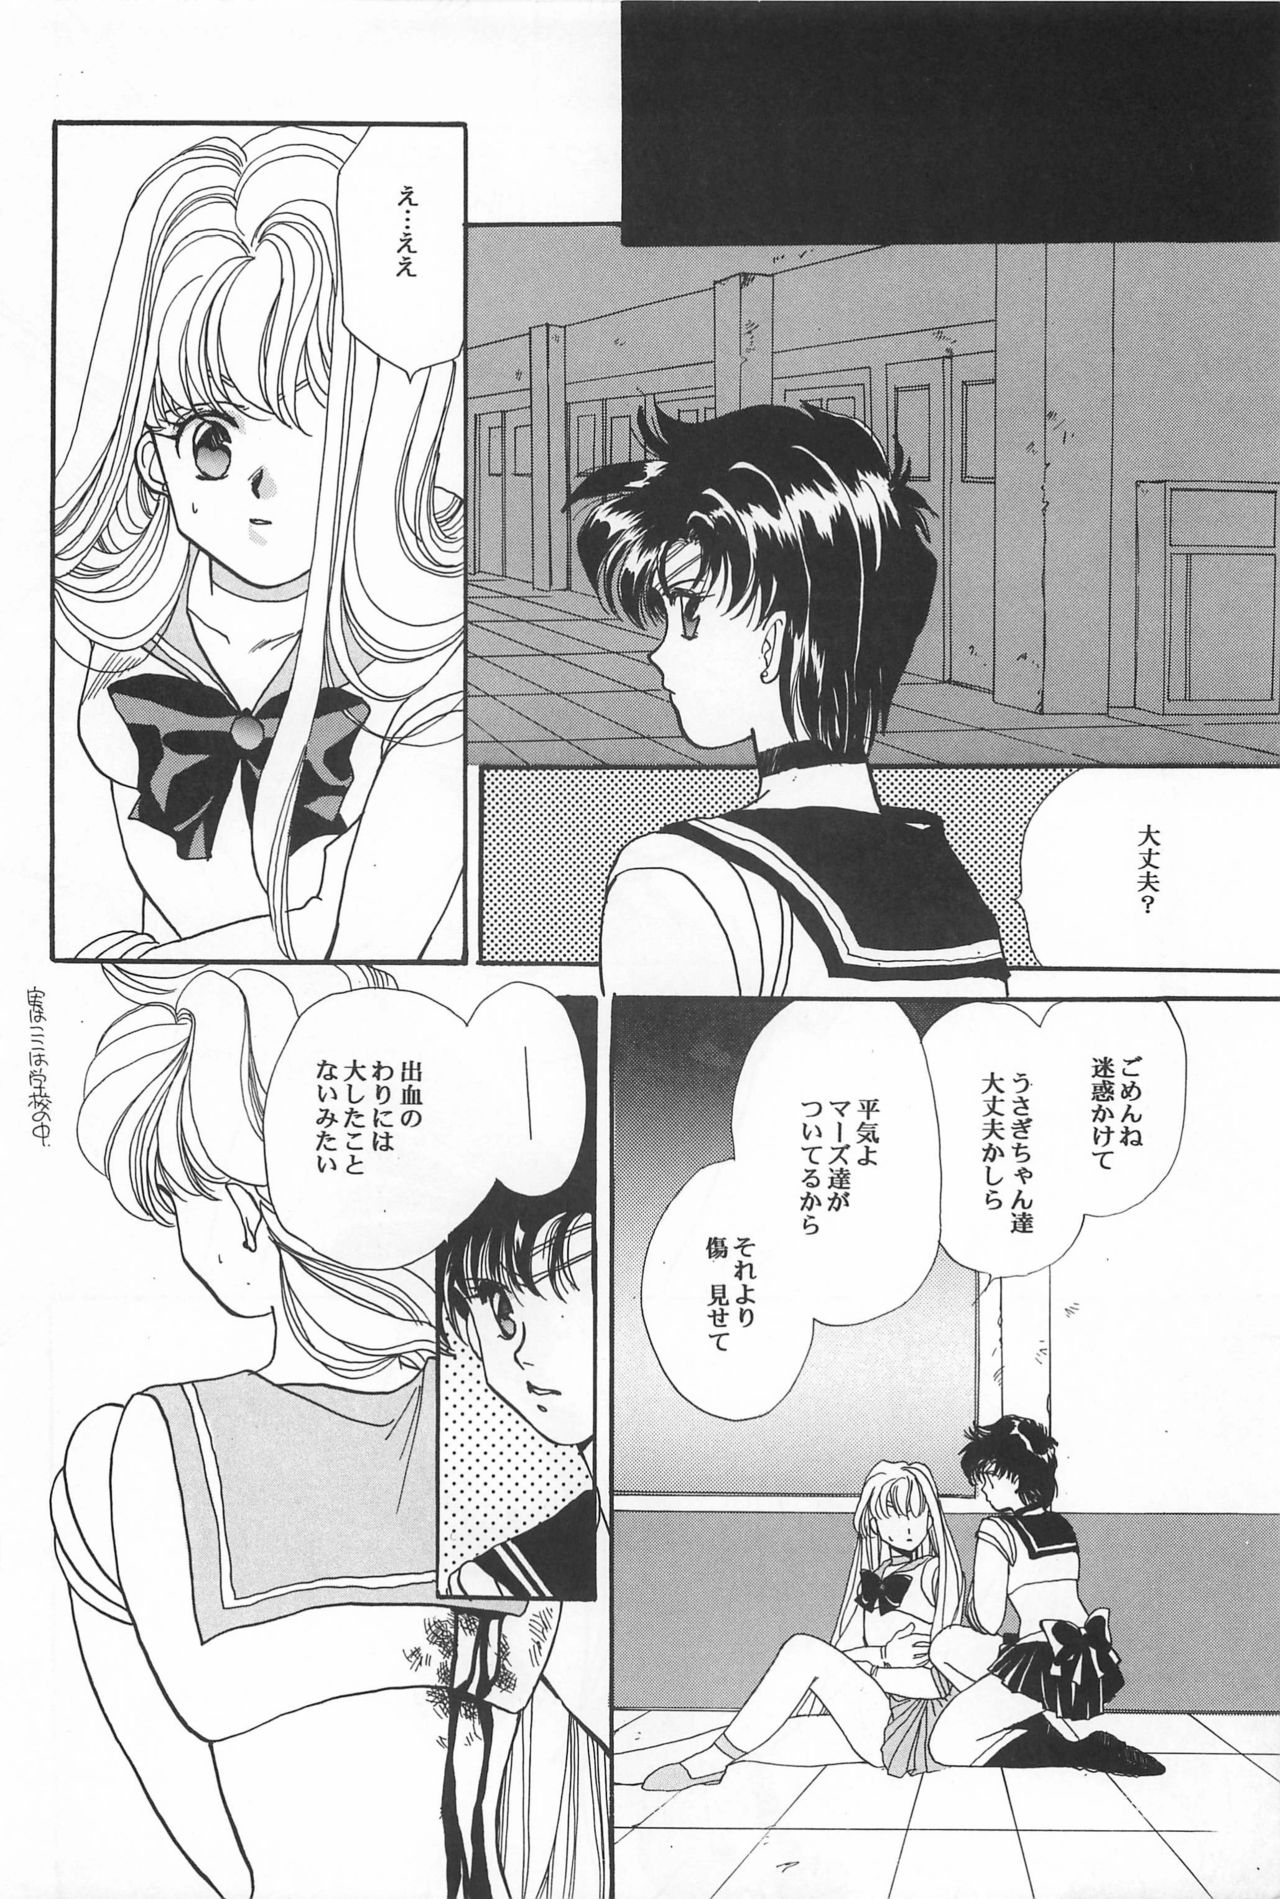 [Hello World (Muttri Moony)] Kaze no You ni Yume no You ni - Sailor Moon Collection (Sailor Moon) 137